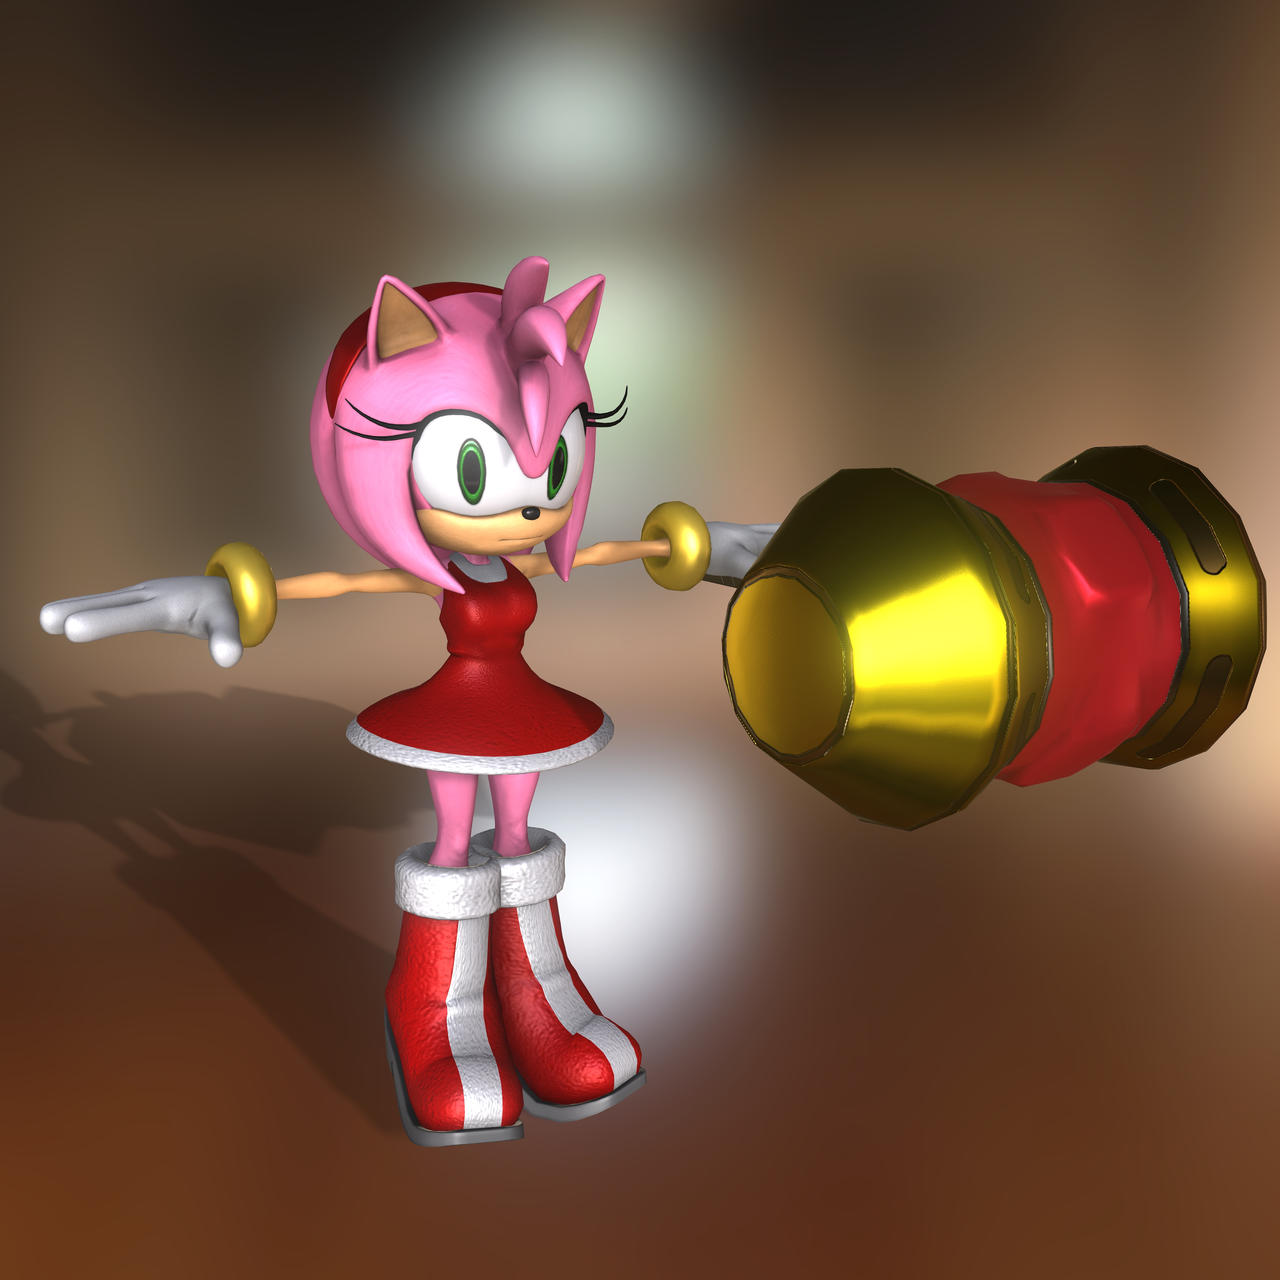 Sonic e Amy Rose Modelo 3D $199 - .3ds .dae .fbx .obj .c4d - Free3D